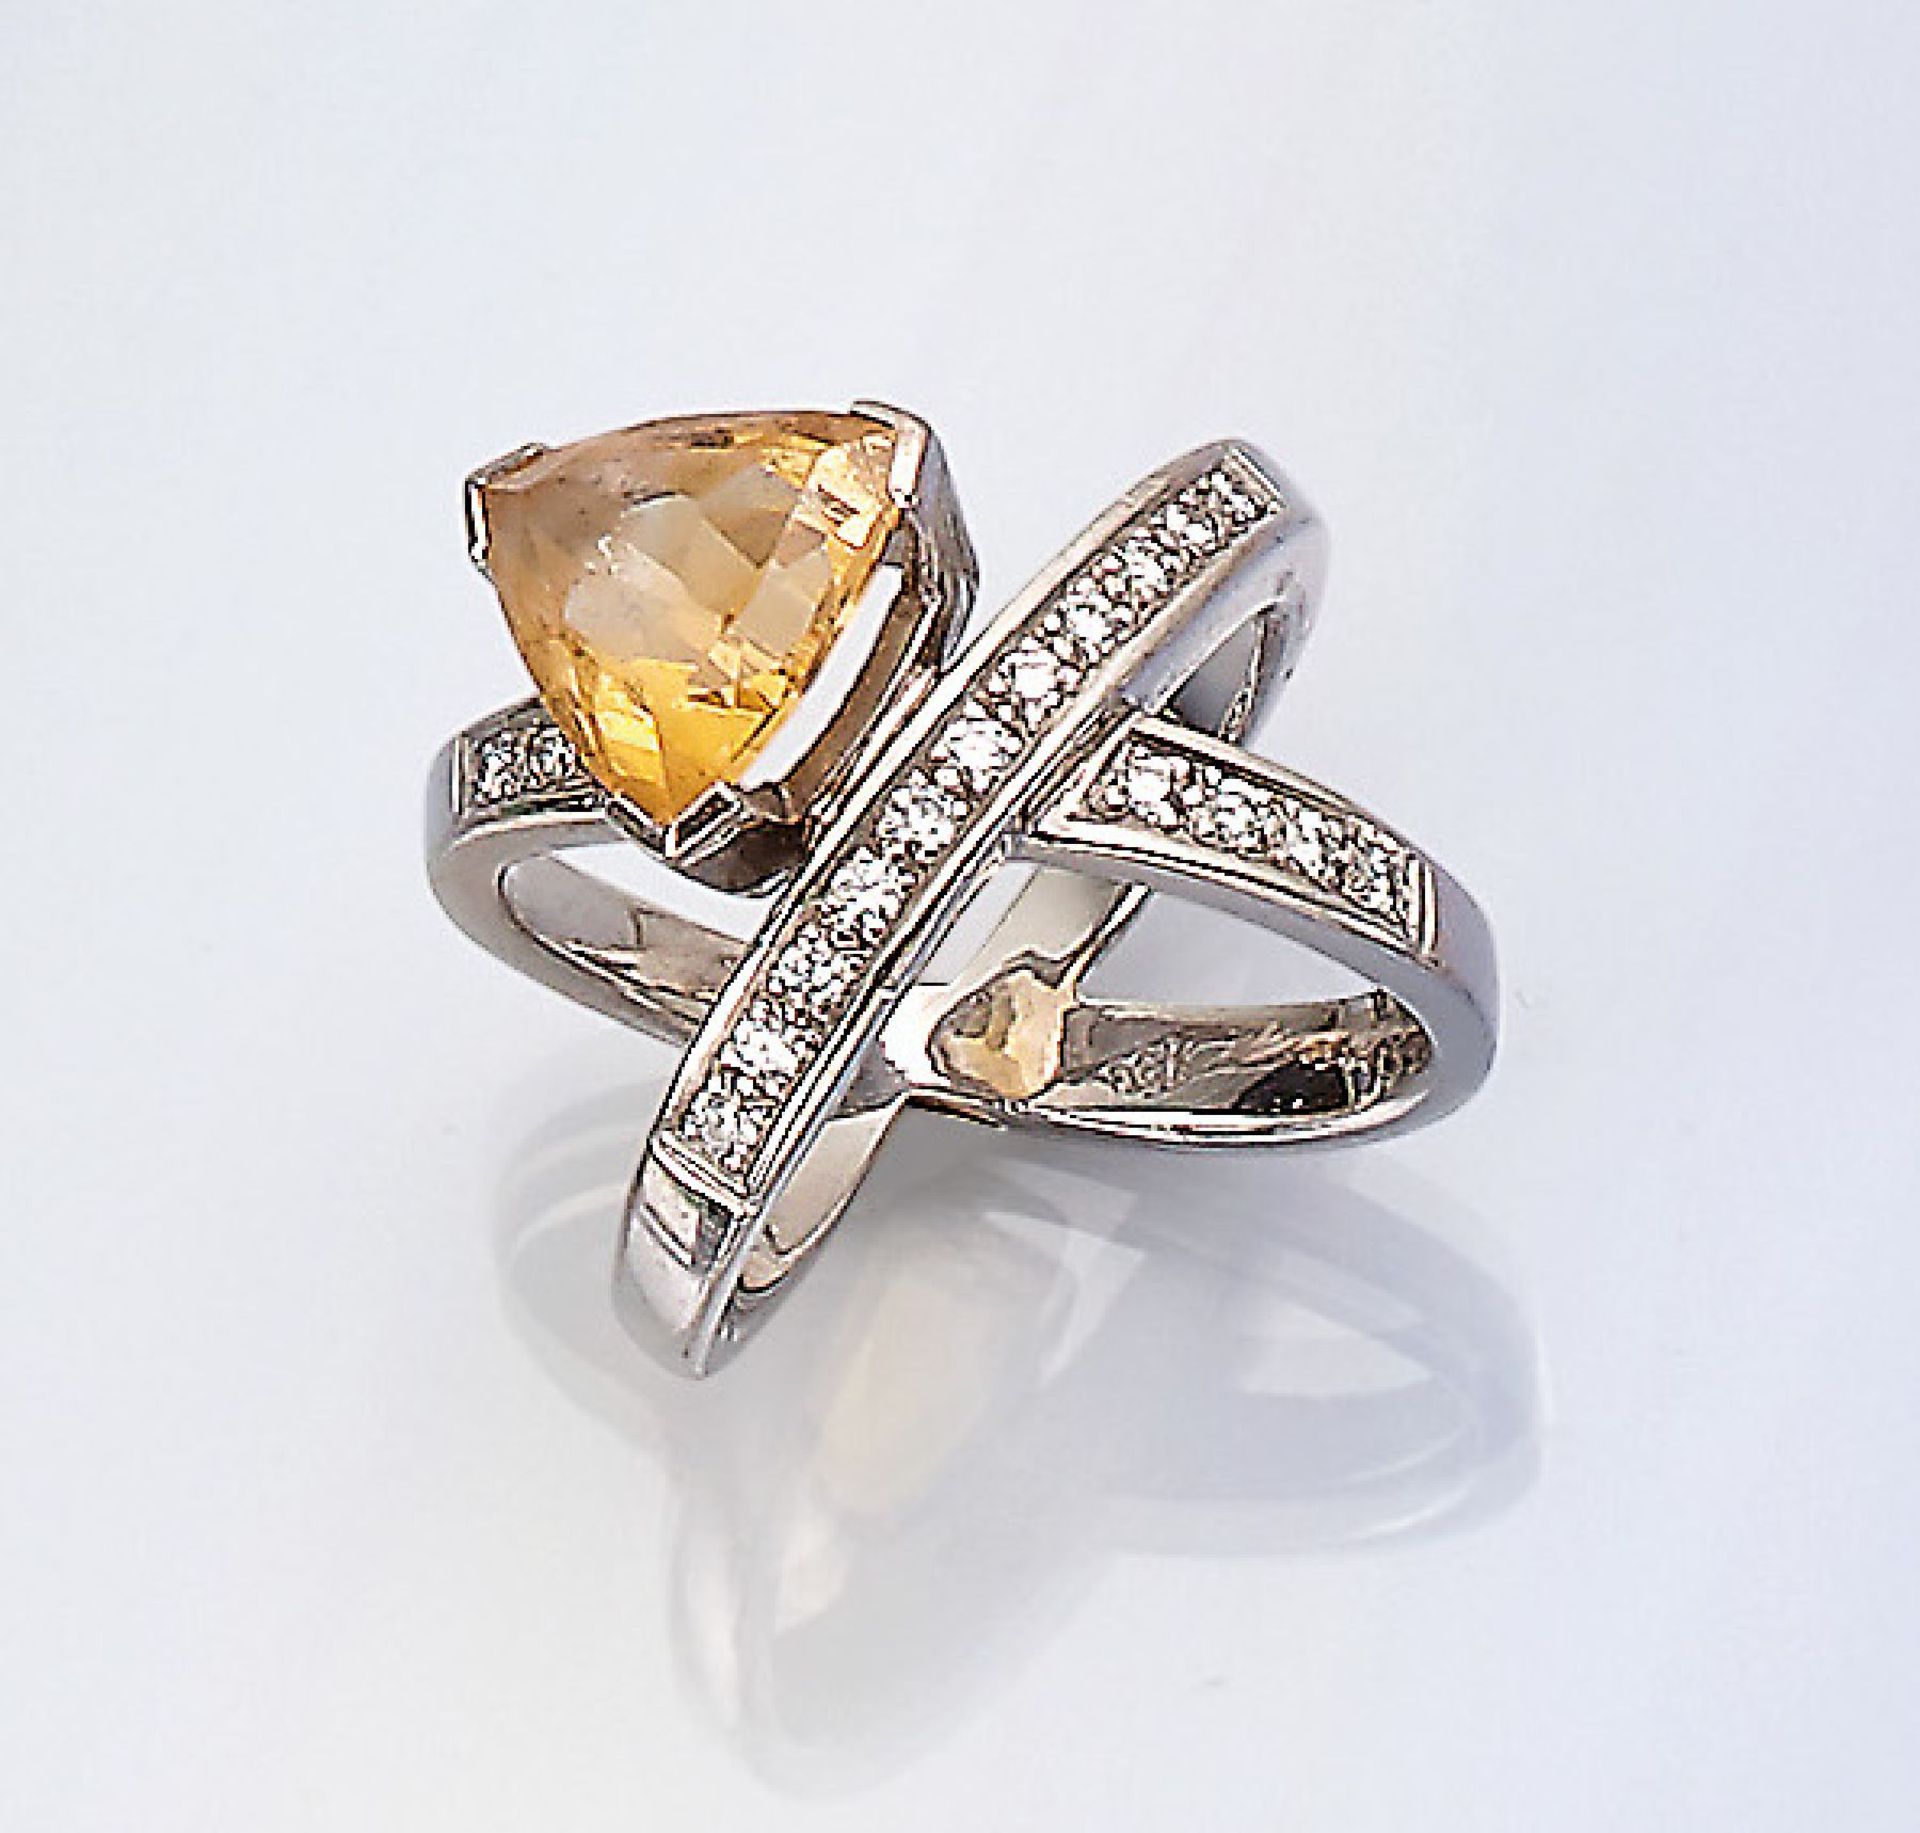 Ausgefallener 18 kt Gold Ring mit Citrin und Brillanten, WG 750/000, überkreuzende Ringschienen,